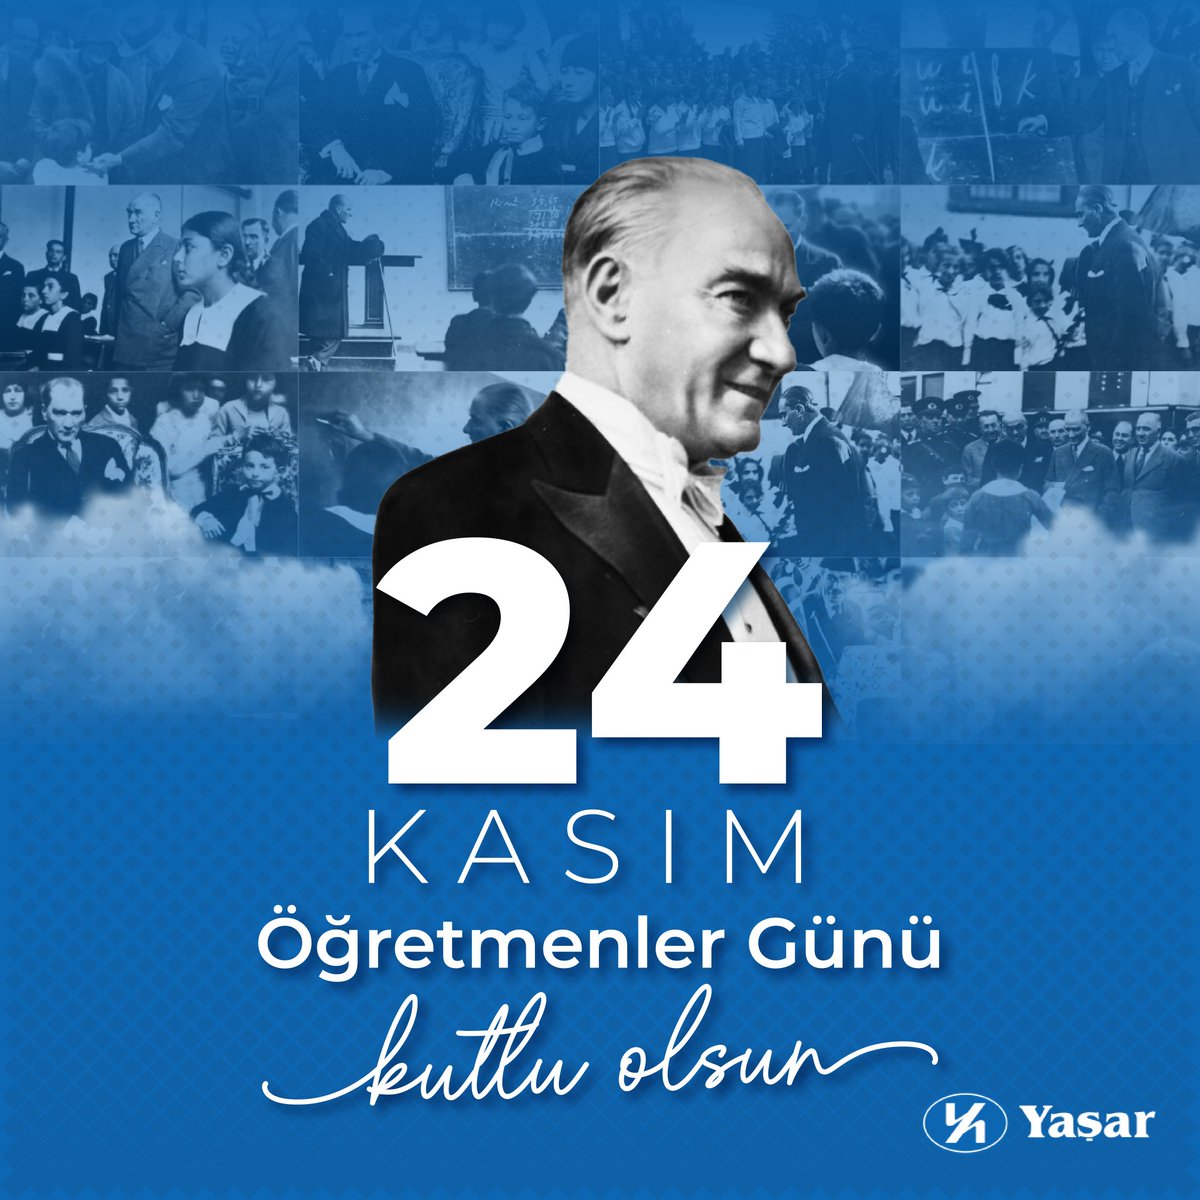 Başöğretmen Mustafa Kemal Atatürk’ün aydınlık yarınlar için gösterdiği yolda, bilgiyi ve değerleri nesillere aktaran öğretmenlerimizin, 24 Kasım Öğretmenler Günü kutlu olsun! #YaşarHolding #YaşarTopluluğu #DahaİyiBirYaşamİçin #İyiBakıyoruz #24Kasım #ÖğretmenlerGünü